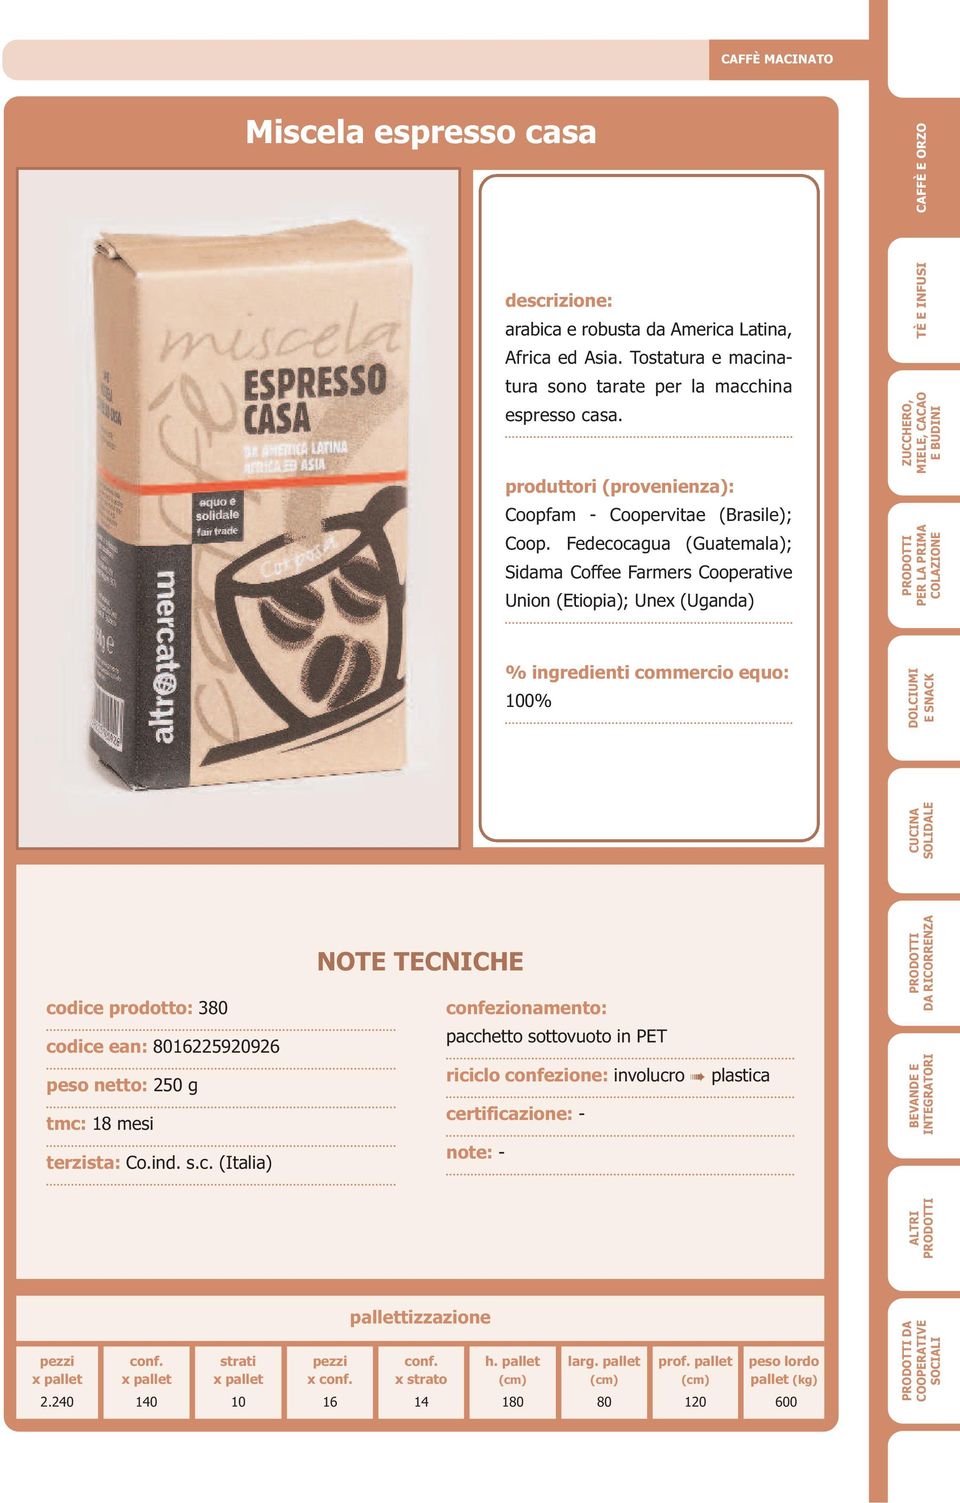 Fedecocagua(Guatemala); Sidama Coffee Farmers Cooperative Union(Etiopia); Unex(Uganda) codice prodotto: 3 codice ean: